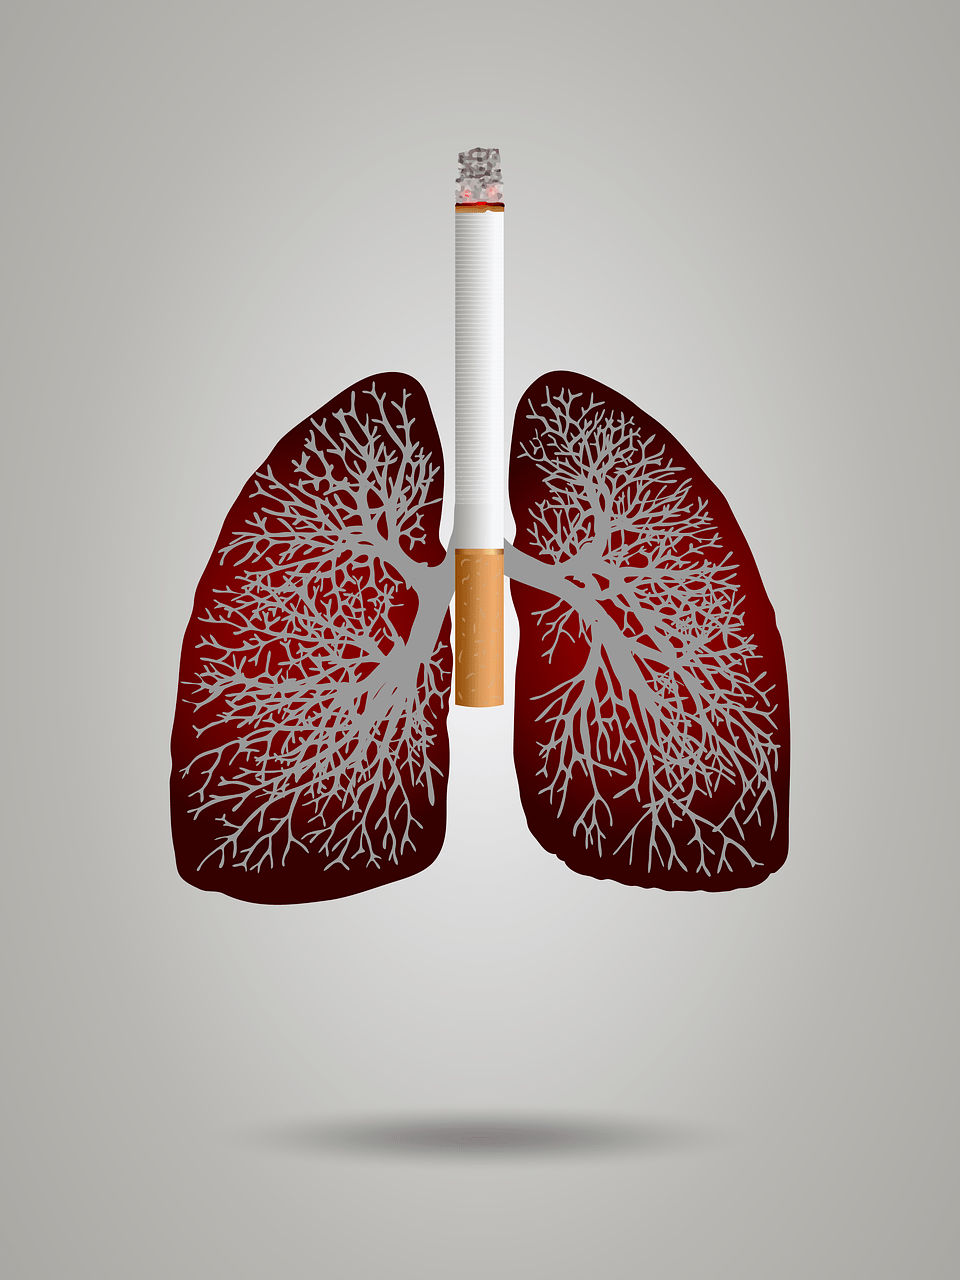 抽烟会对肺部健康造成极大危害   alexey hulsov / pixabay